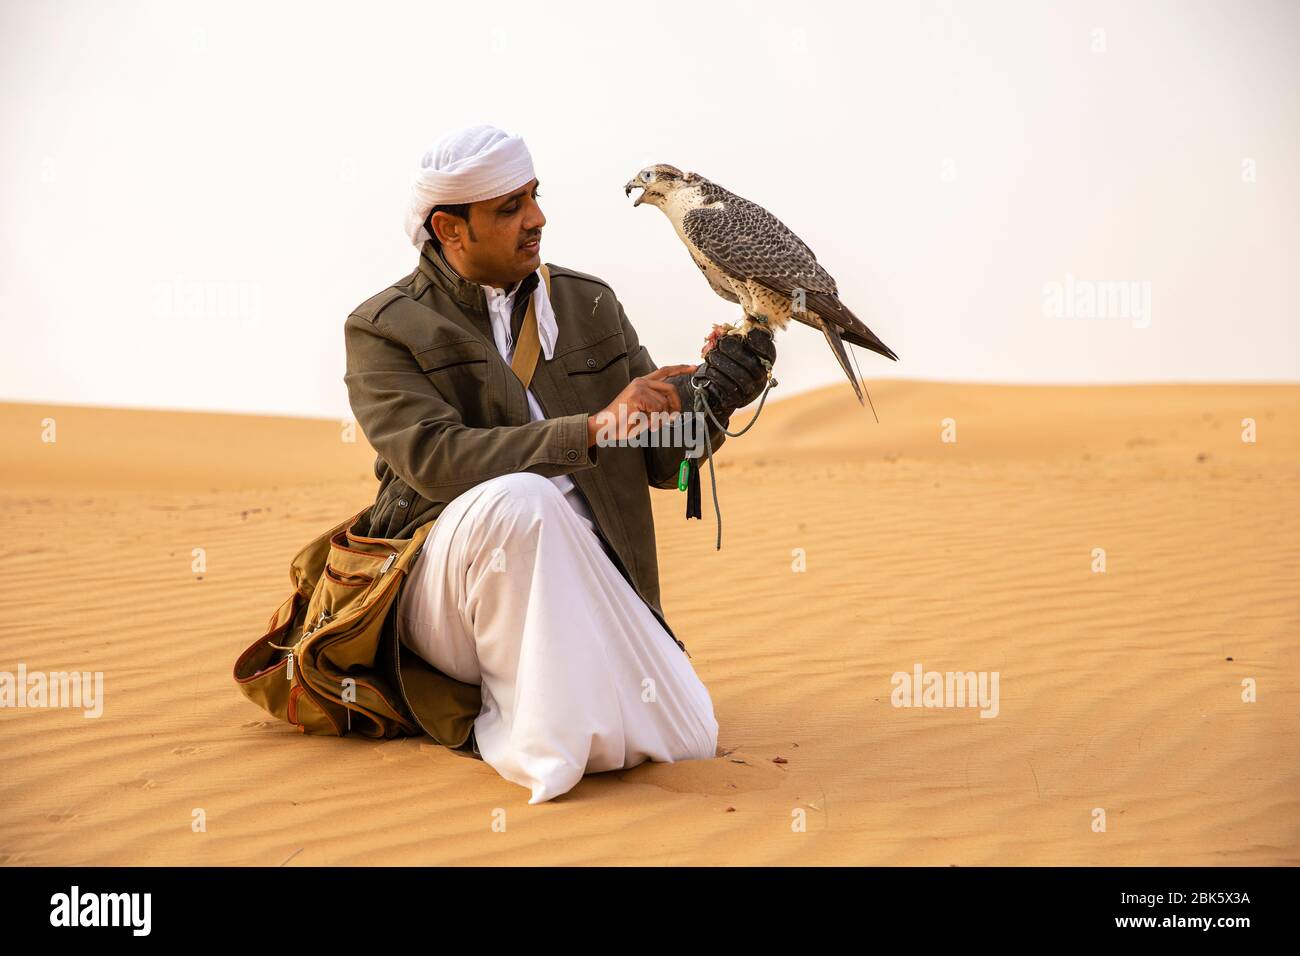 Fauconnerie dans la Réserve de conservation du désert de Dubaï, Dubaï, Émirats arabes Unis Banque D'Images